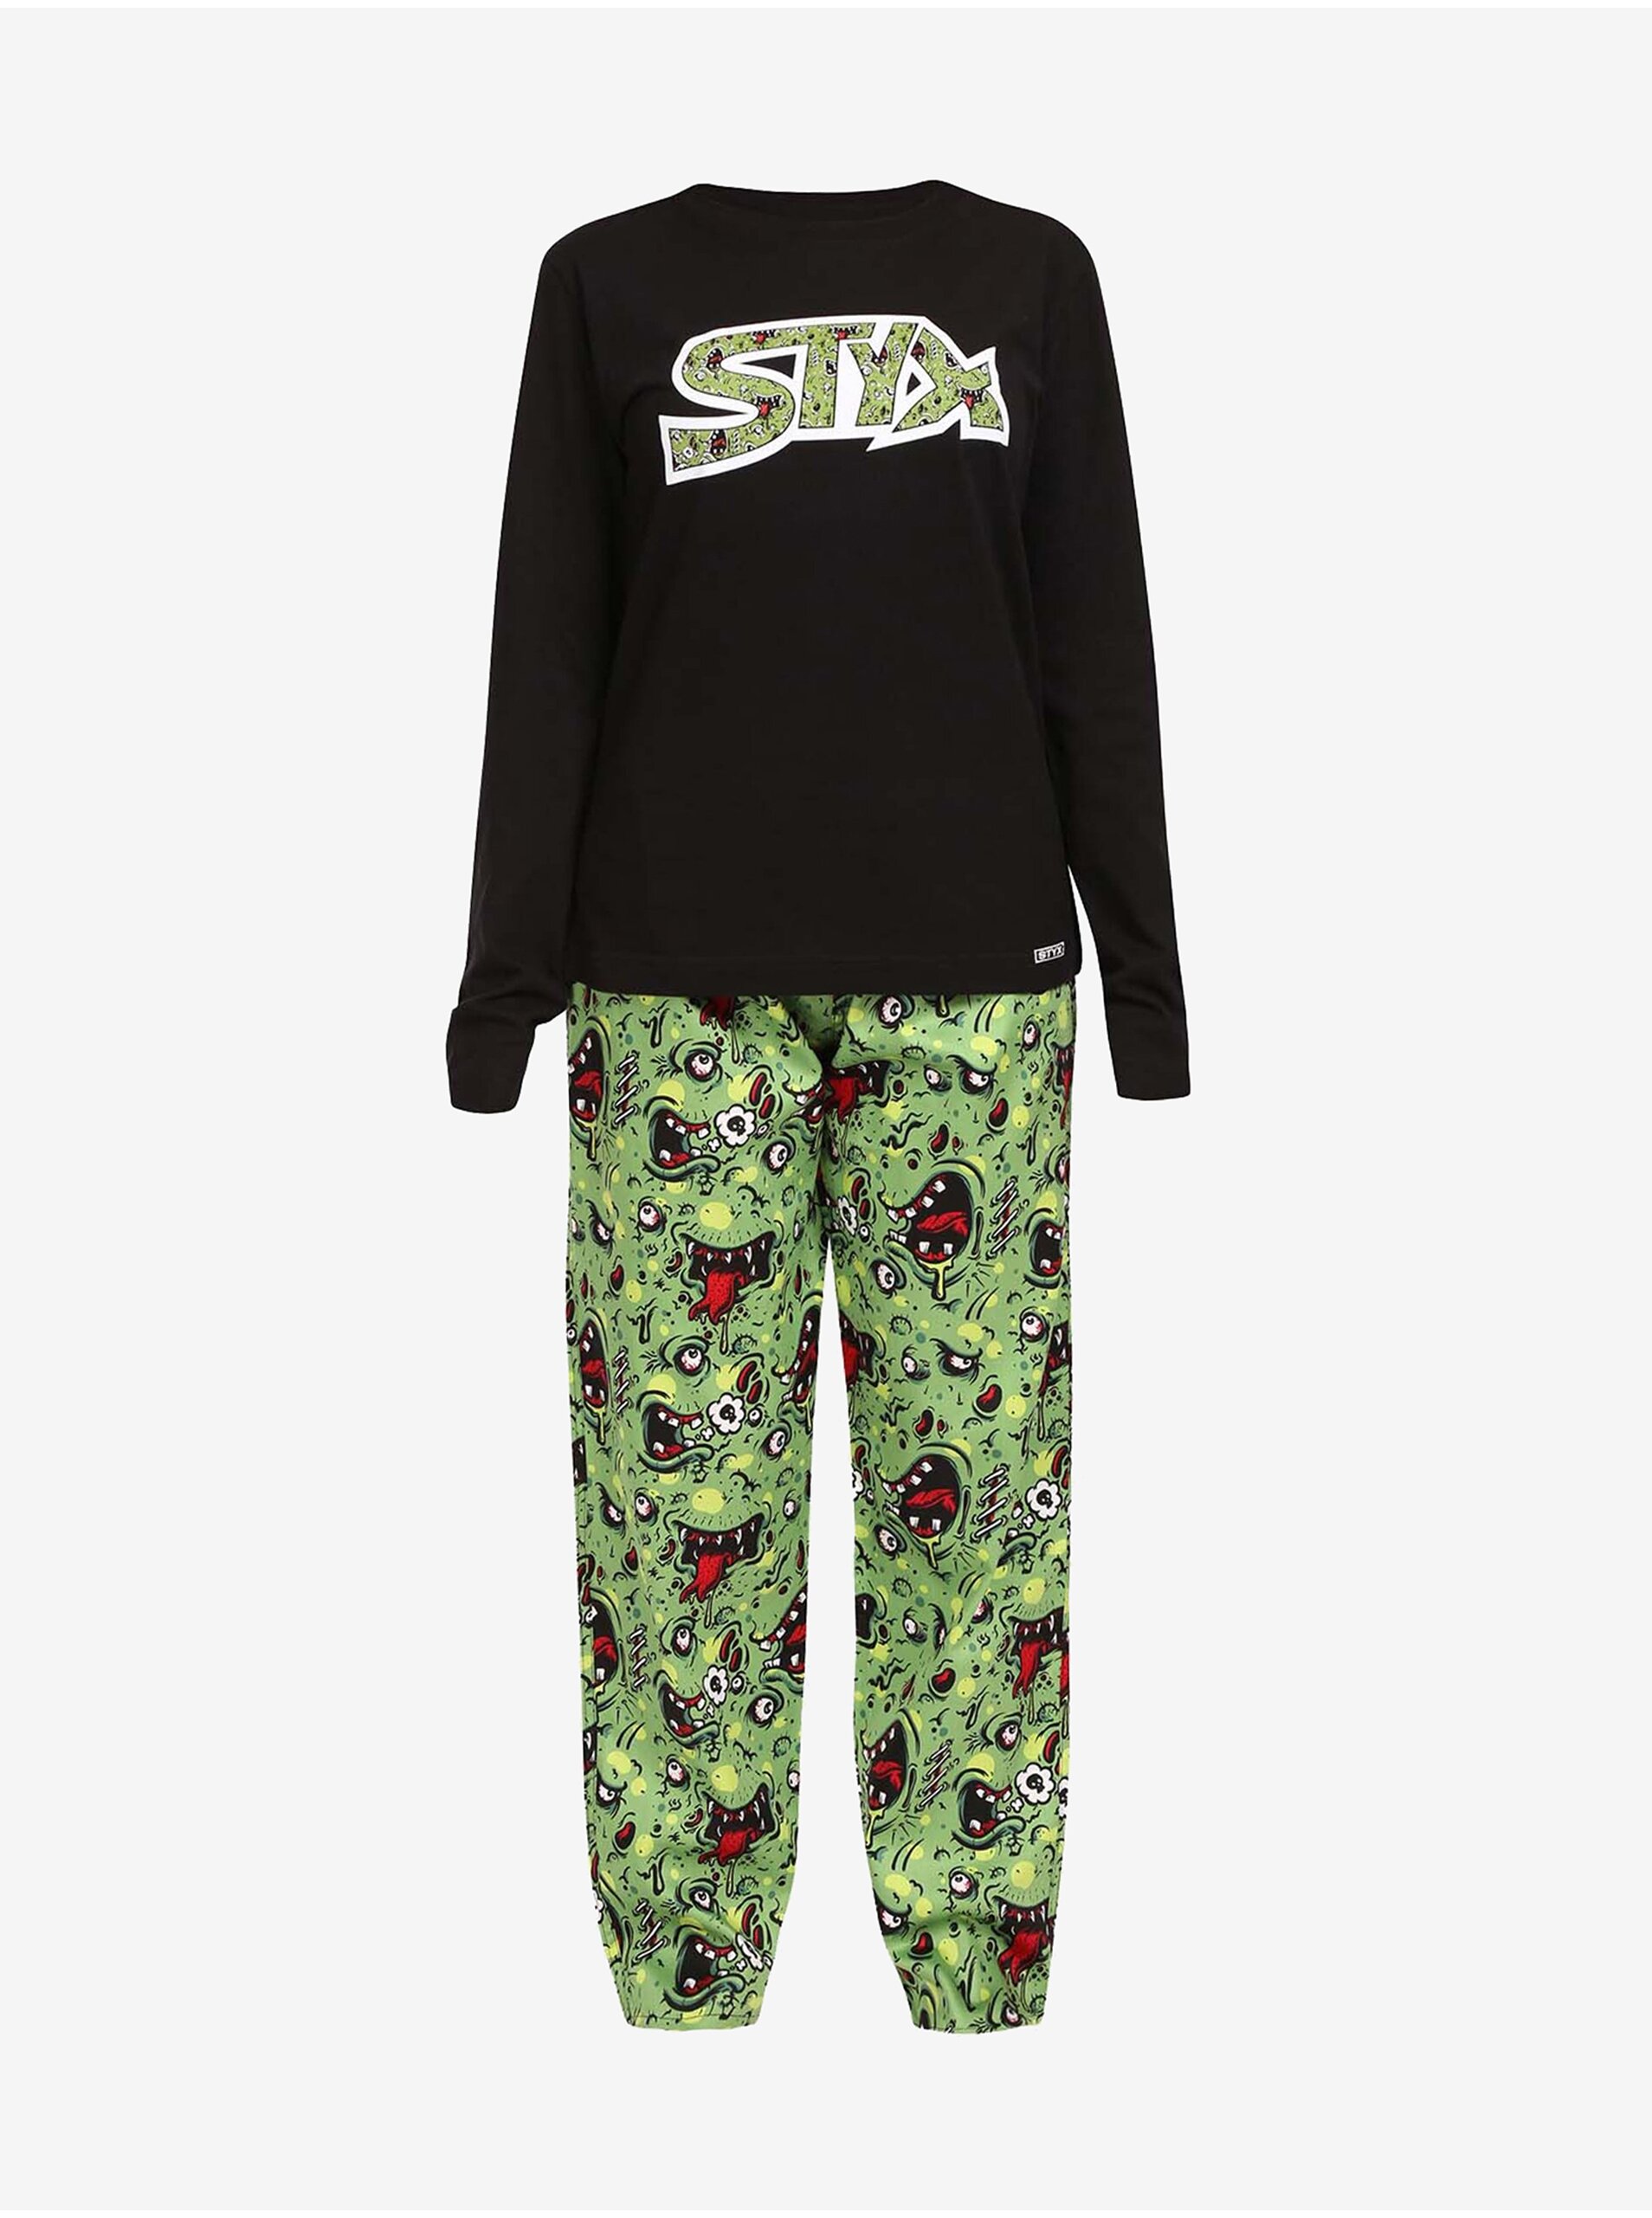 E-shop Černo-zelené dámské pyžamo Styx Zombie